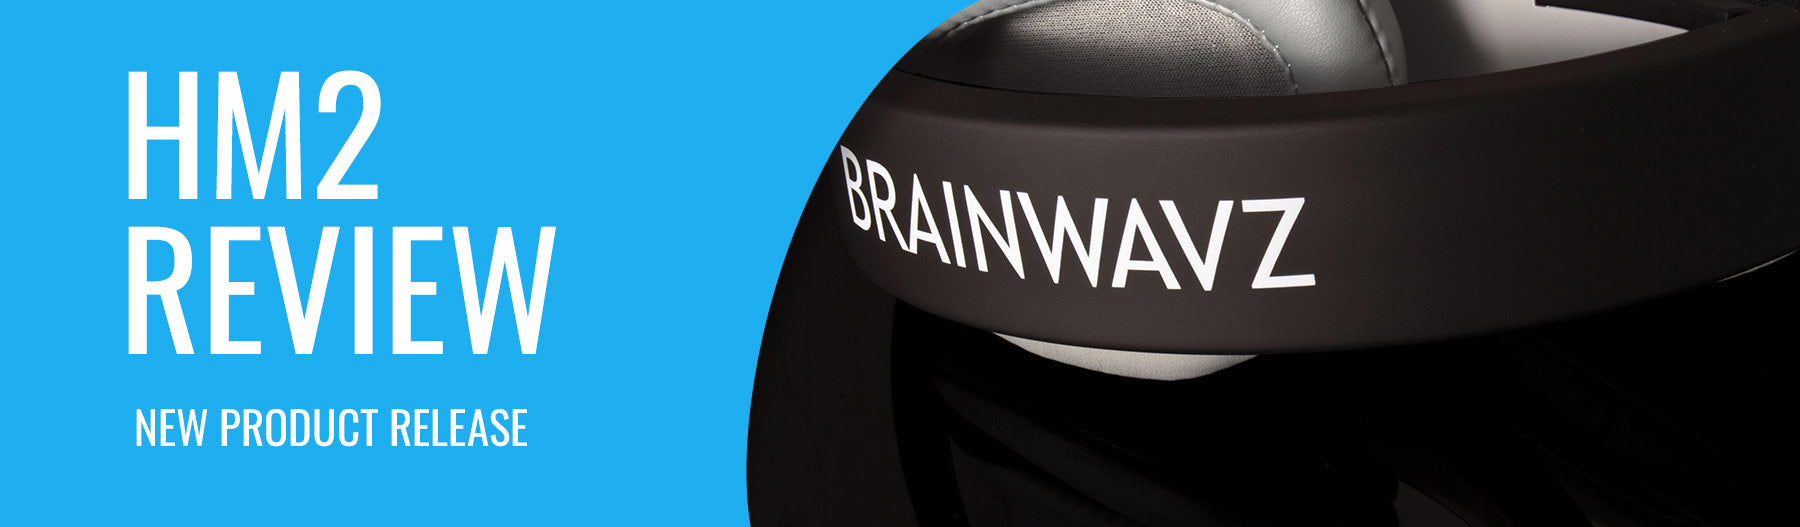 Brainwavz HM2 video review